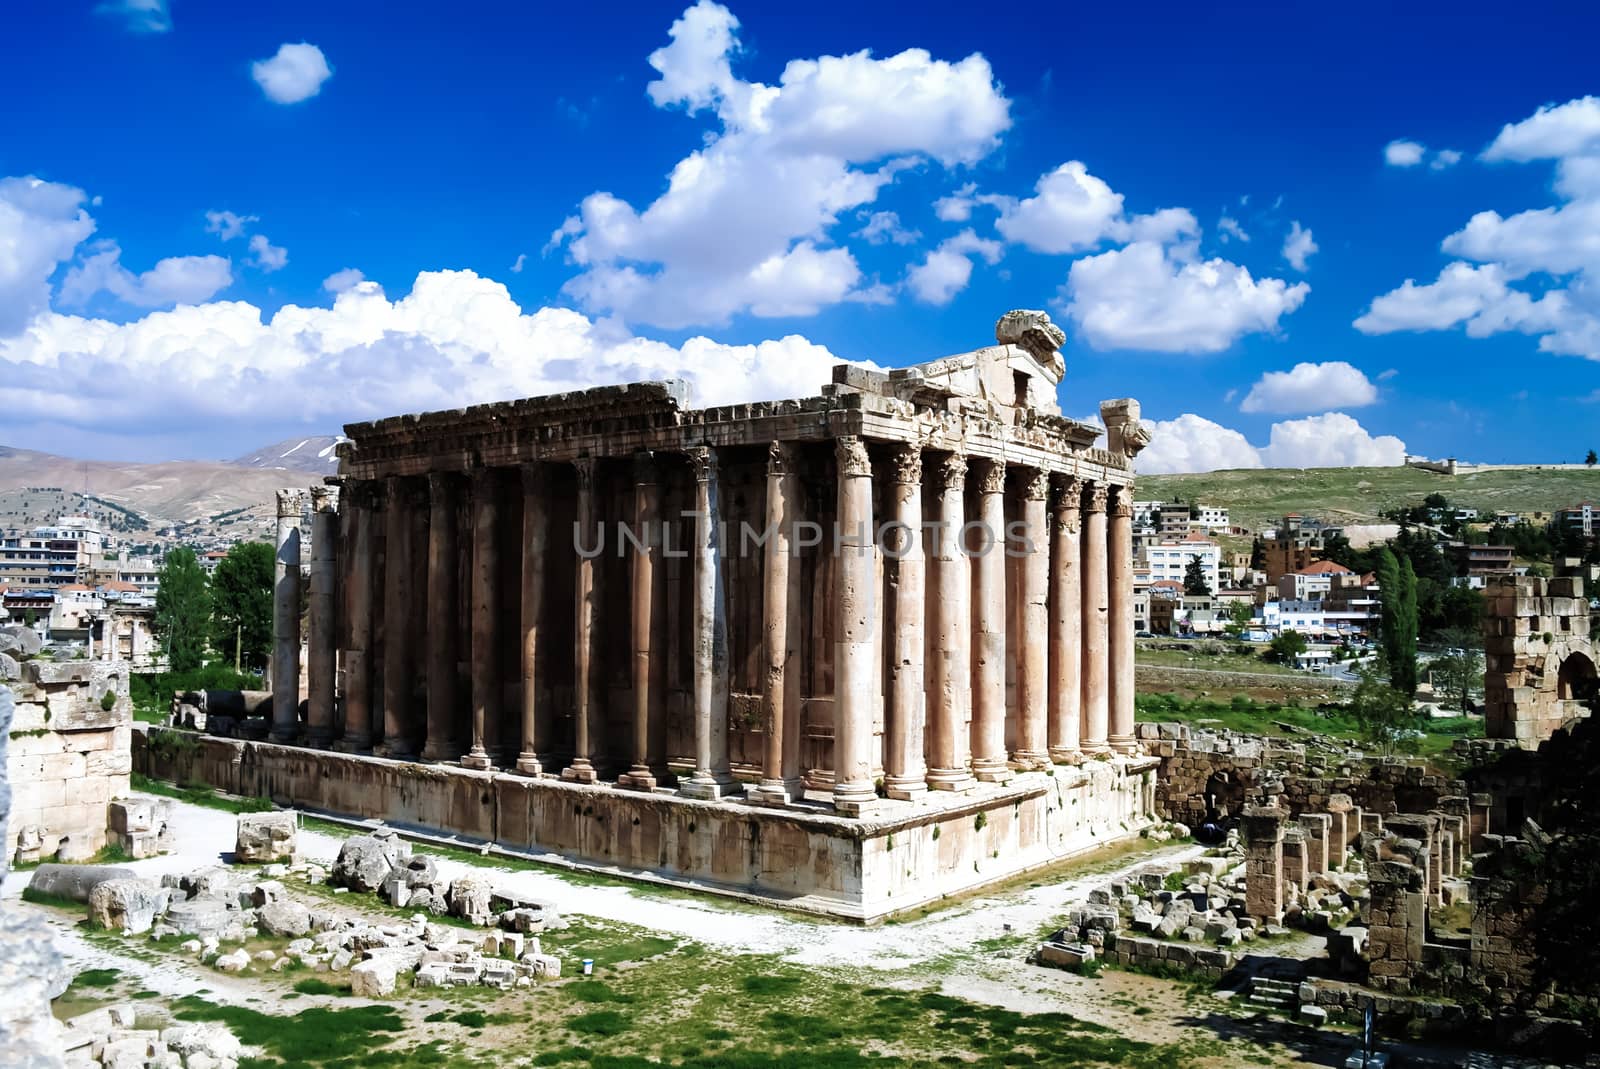 Ruins of Bacchus temple in Baalbek, Bekaa valley Lebanon by homocosmicos